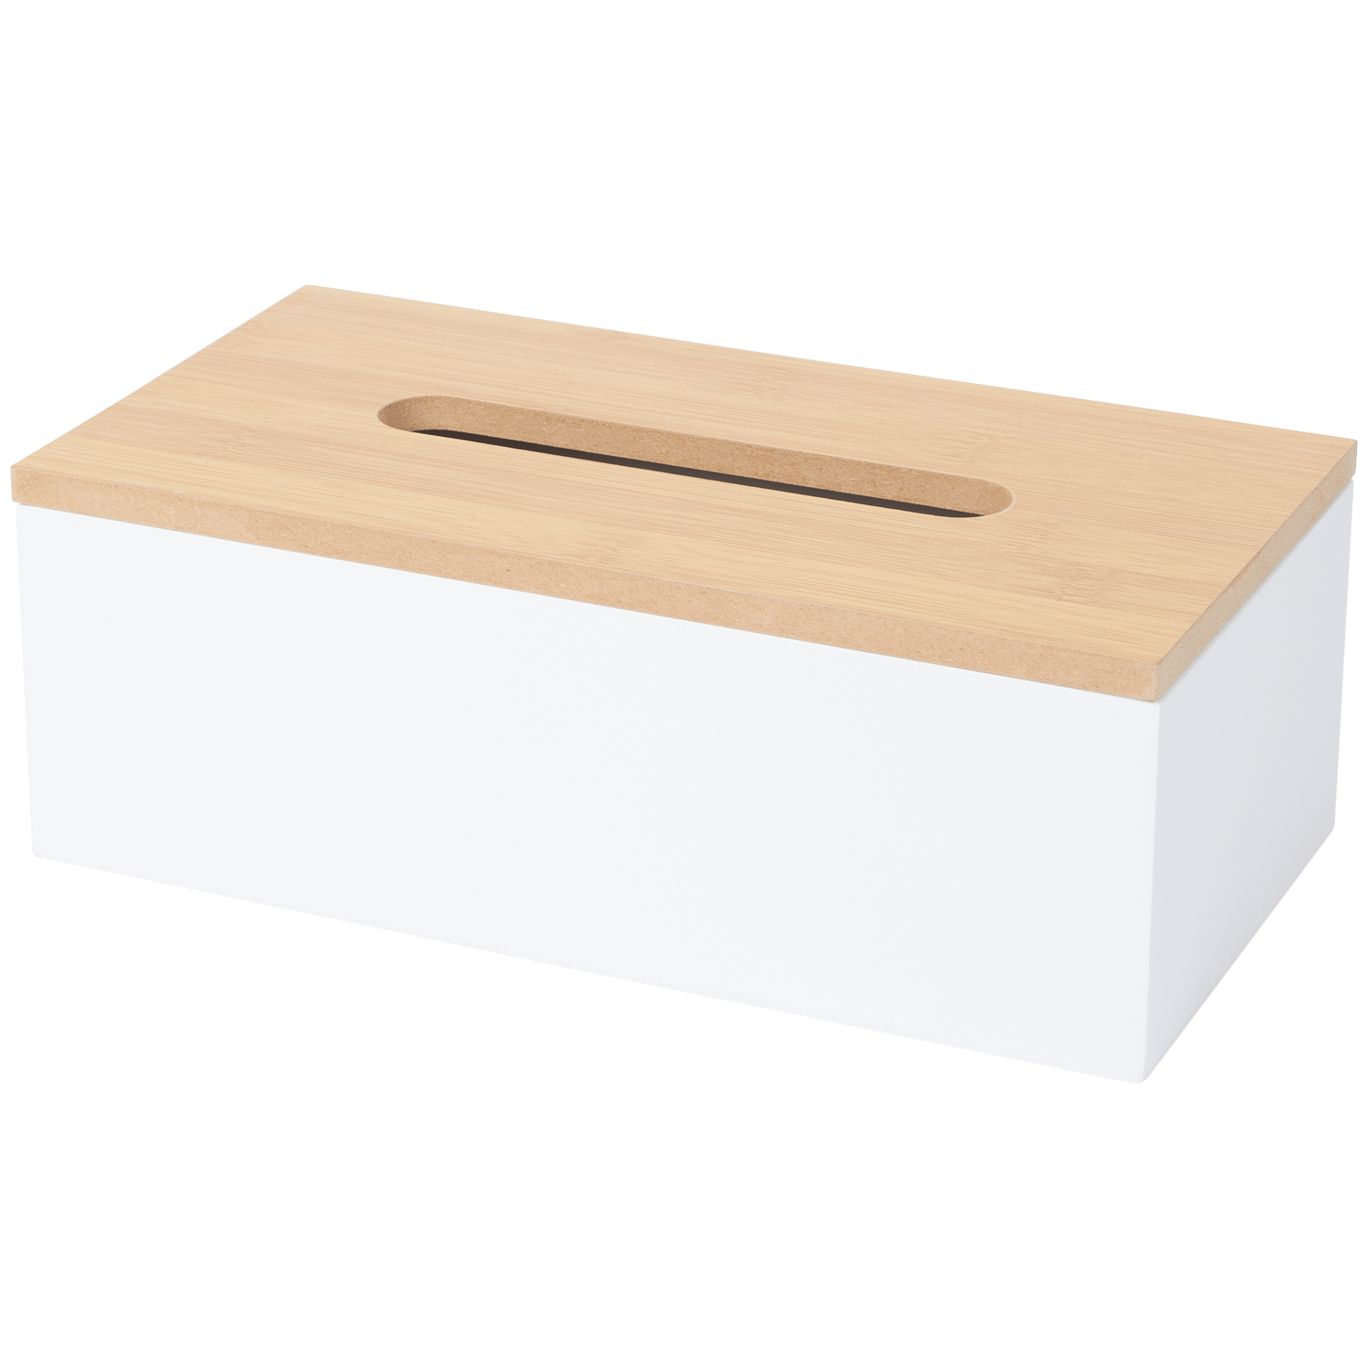 Taschentuchbox